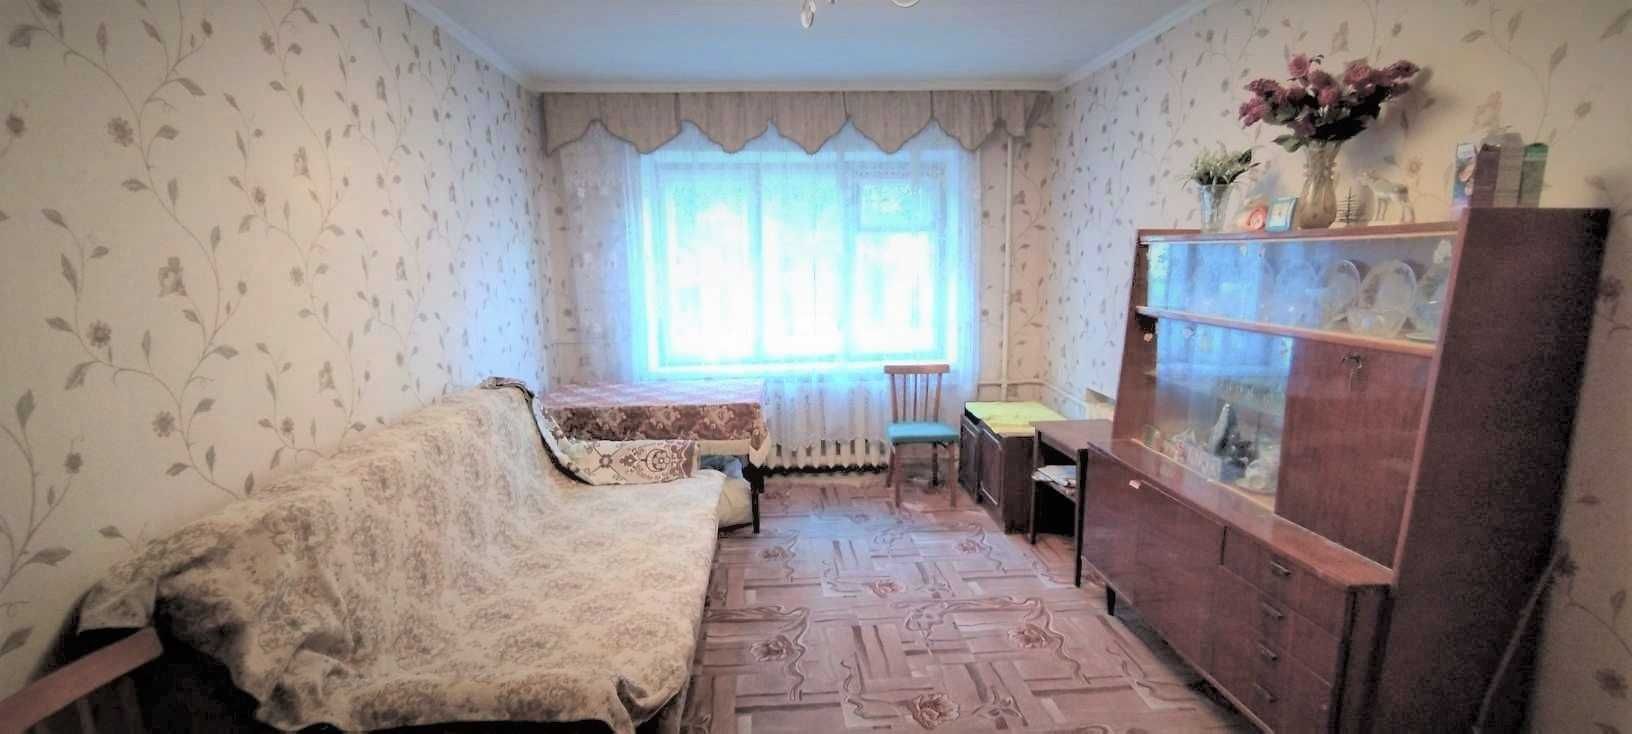 Війскбуд, ПРОДАЖ 1-но кімнатної квартири по вулиці Сквирське Шосе 236